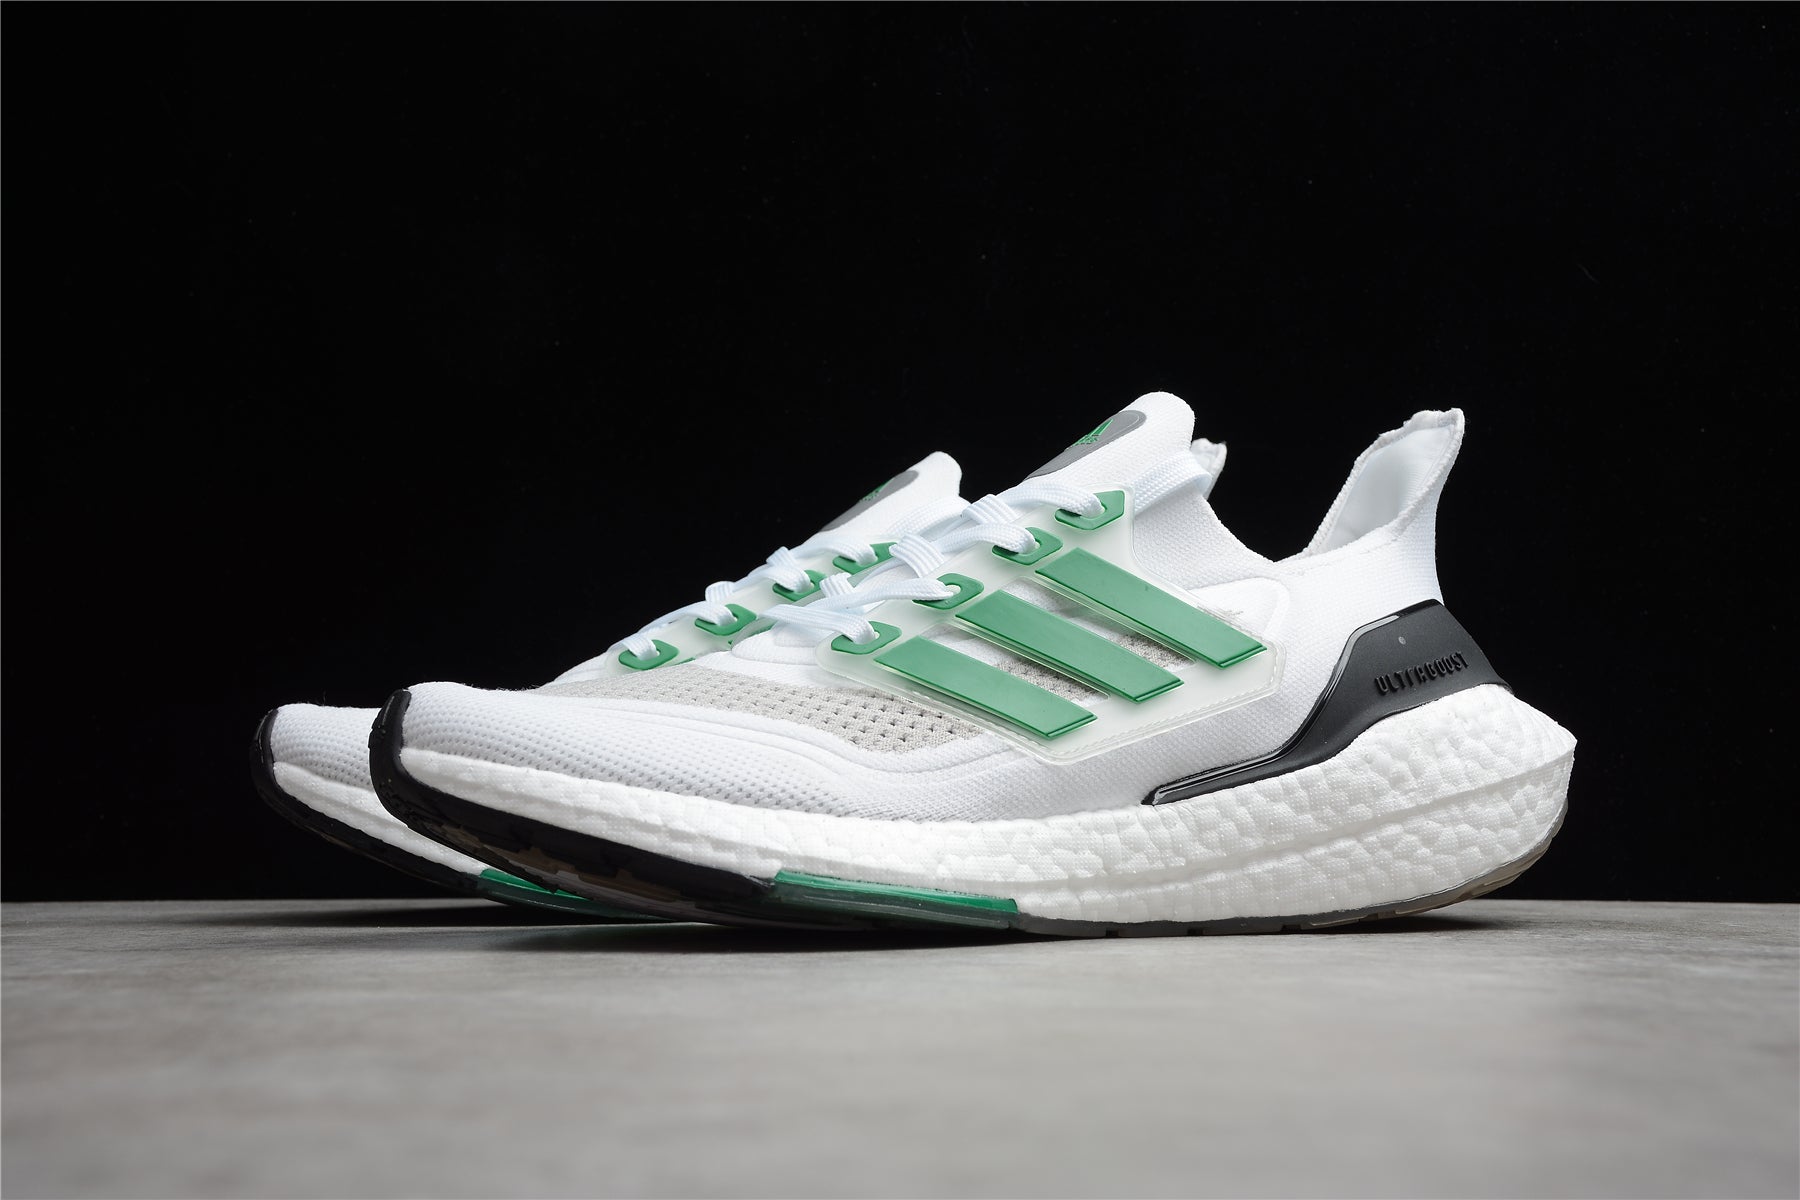 Chaussures Adidas ultraboost blanc vert